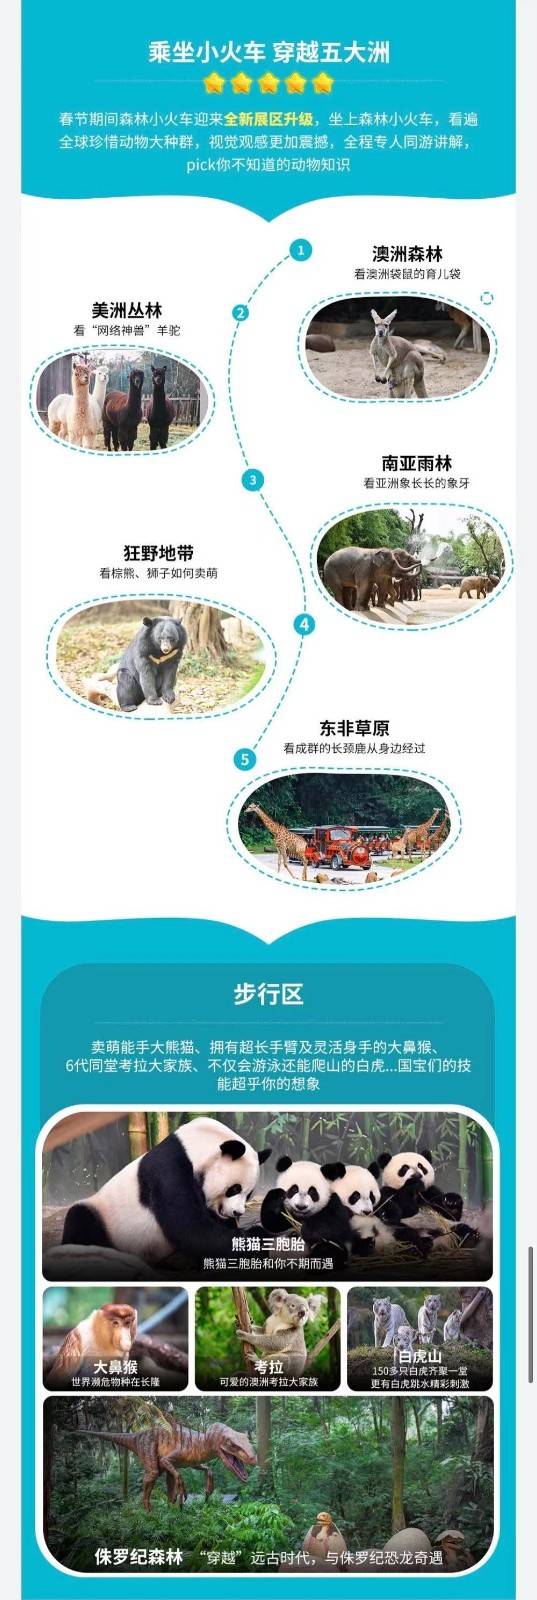 【4月限时特惠】广州长隆野生动物世界平日双人票（4.11-4.29）